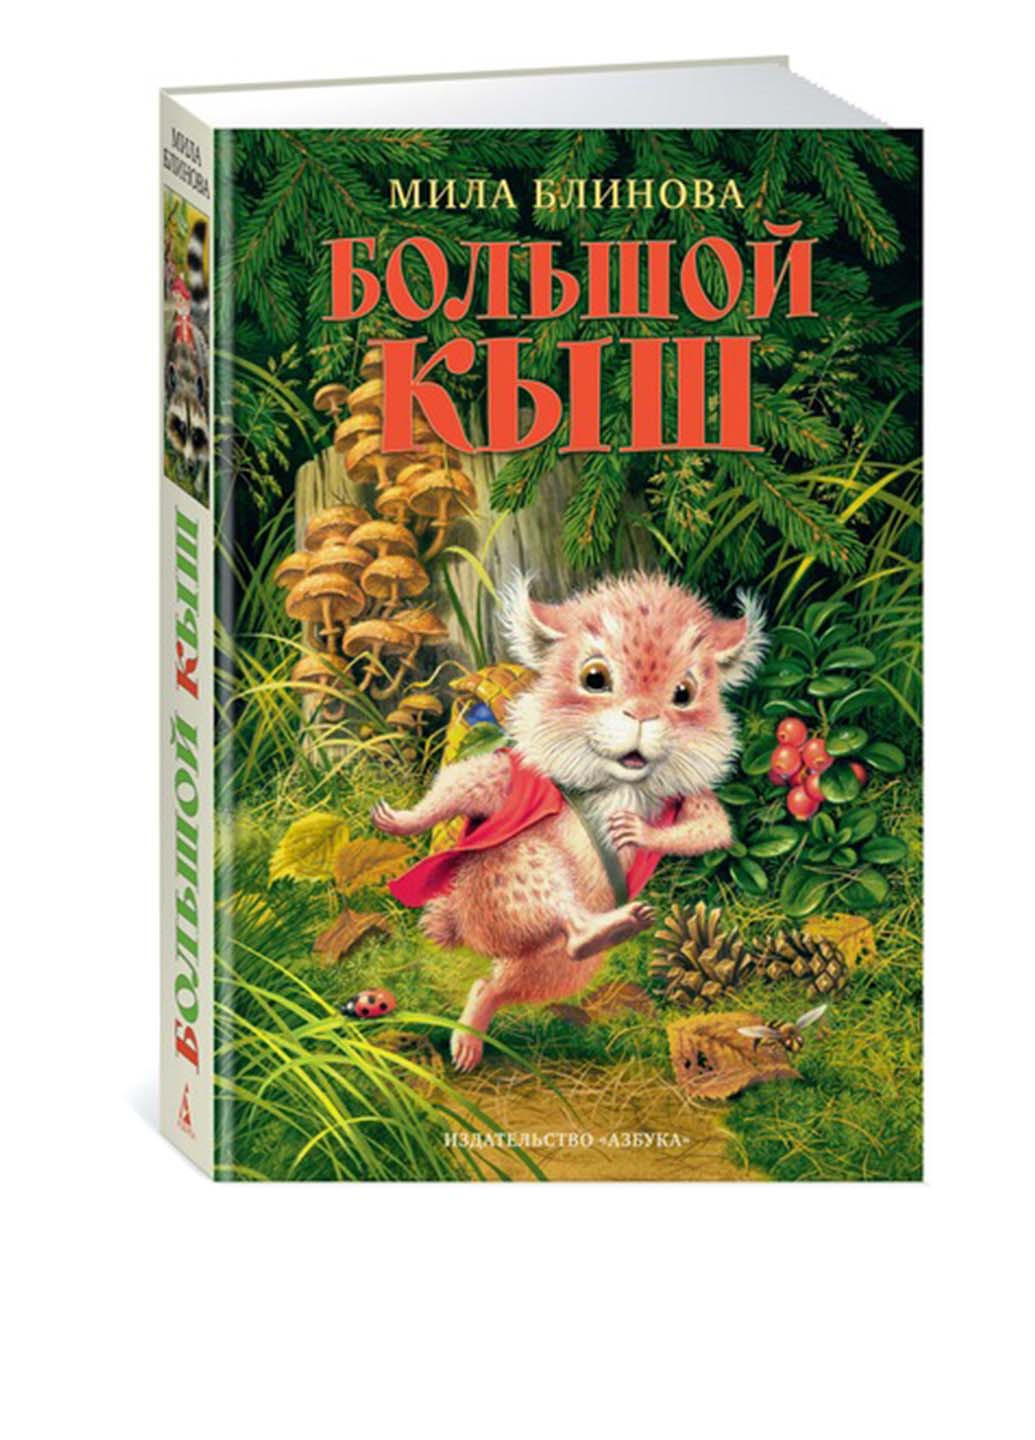 Книга "Великий Киш" Издательство "Азбука" (173194952)